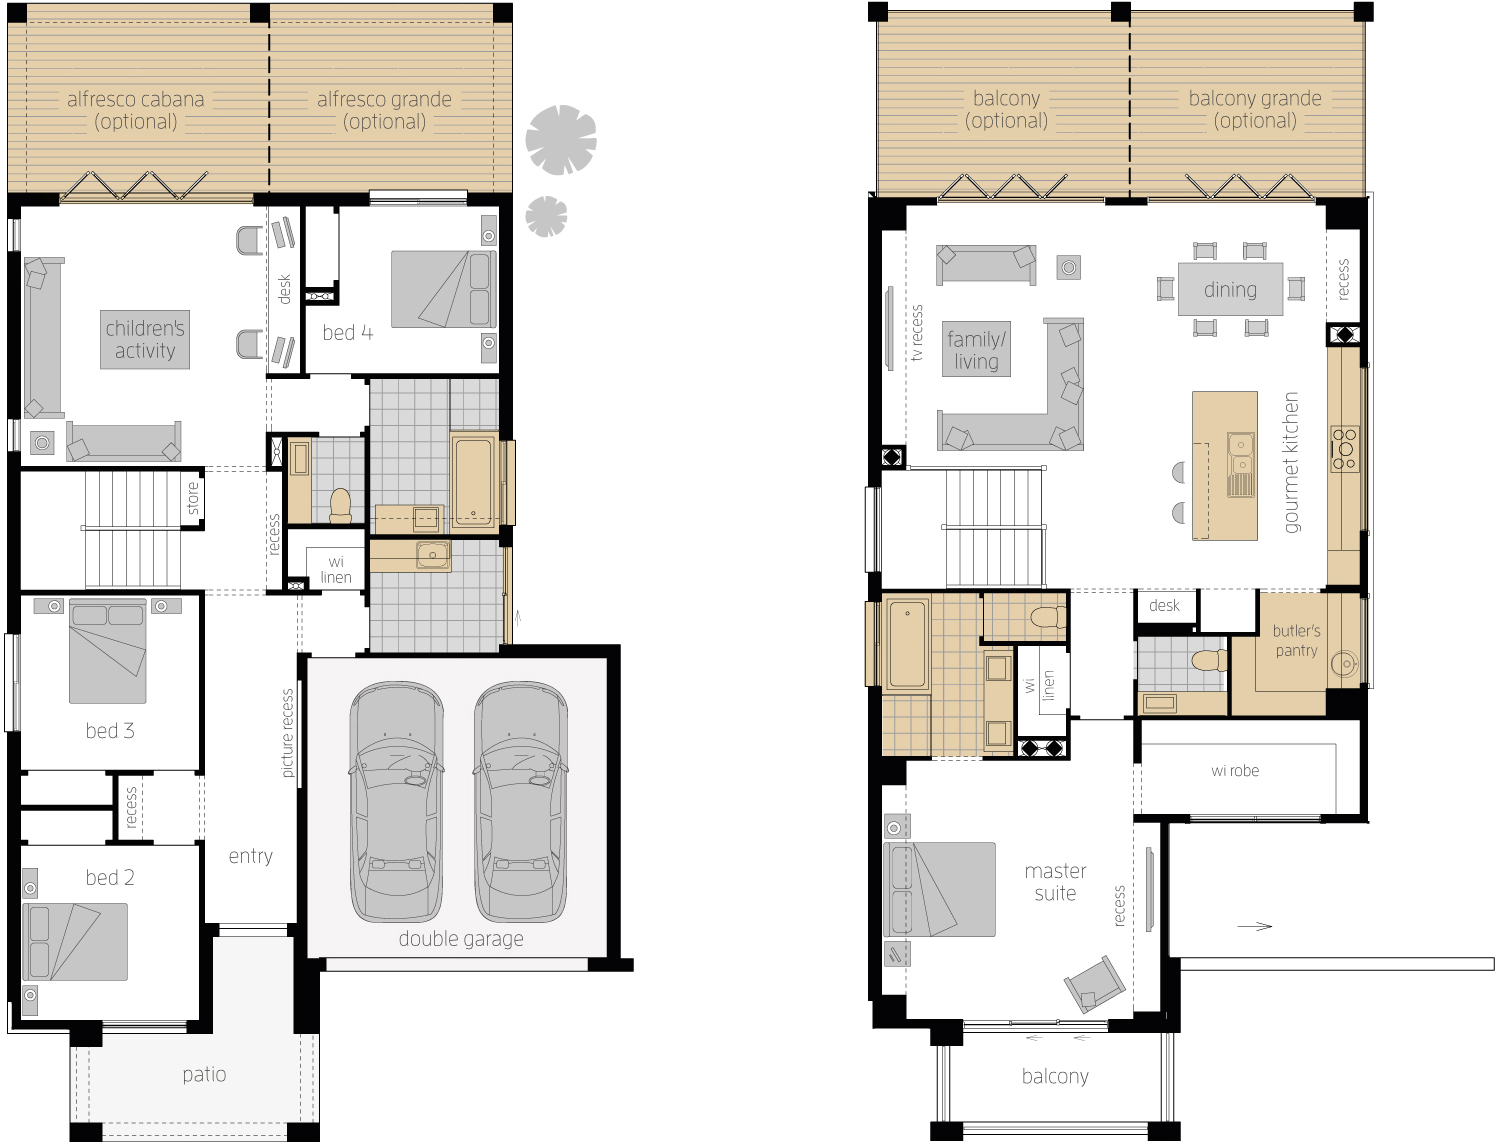 Floor Plan - Massena 30 Upside Down Two Storey Home - McDonald Jones